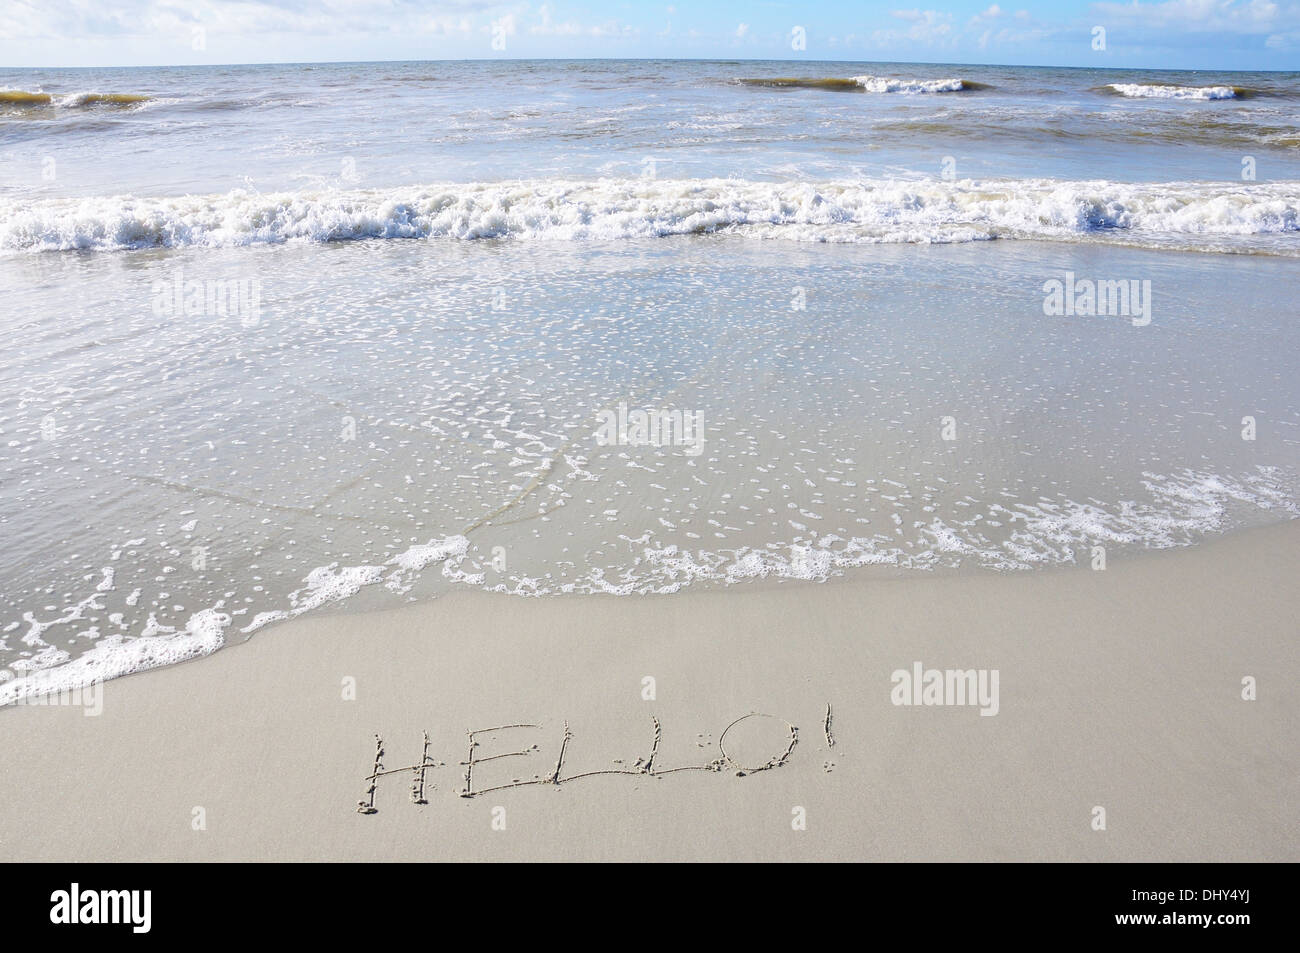 Seashore with HELLO! written on the sand Stock Photo